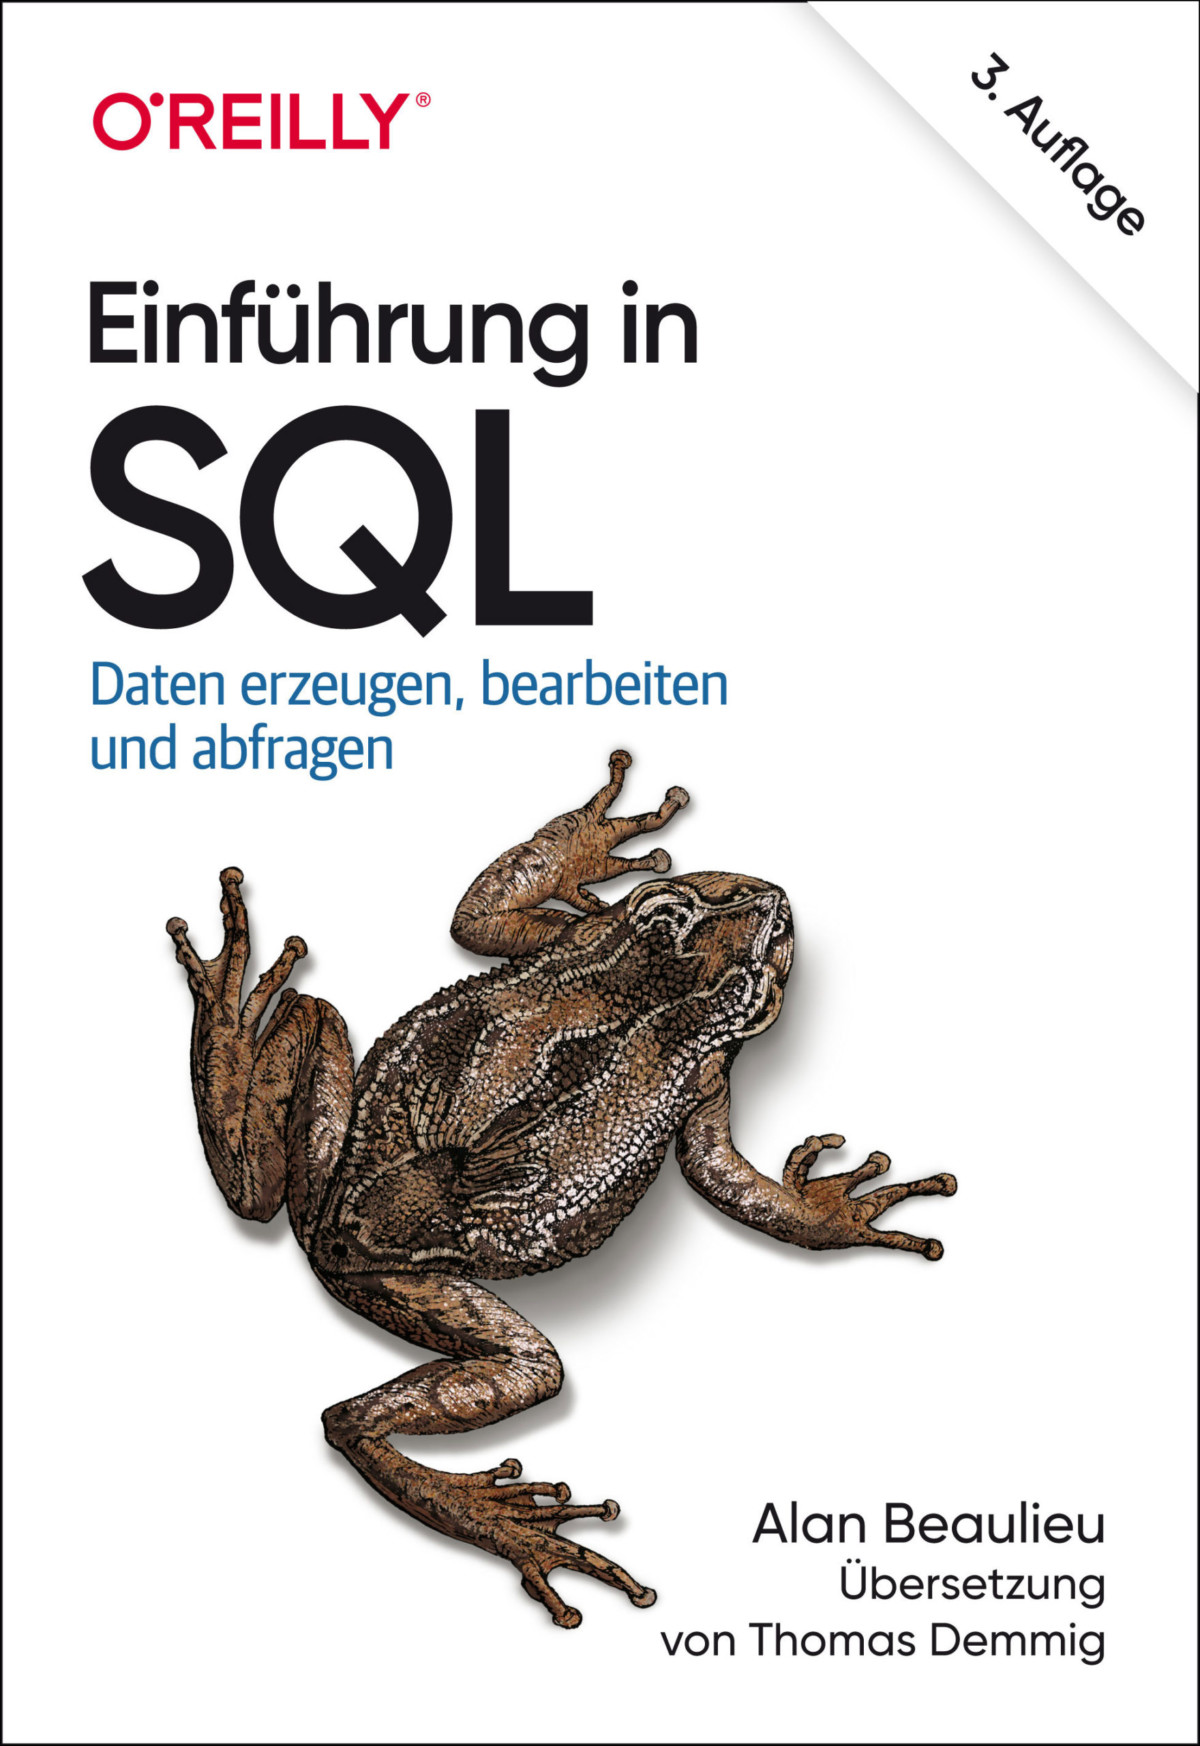 Einführung in SQL von Alan Beaulieu | O‘Reilly